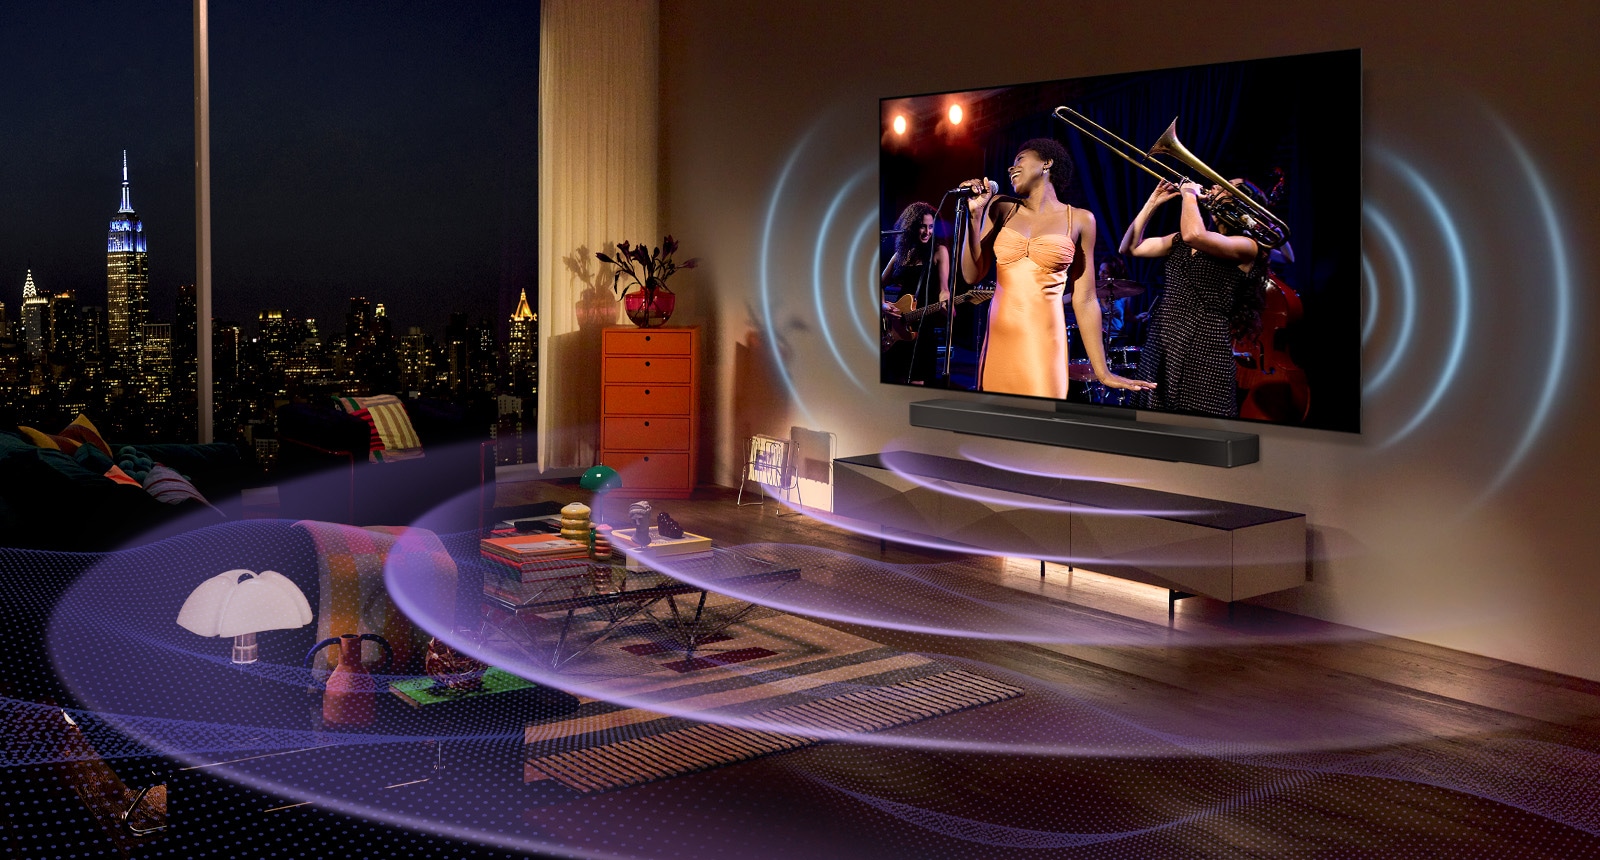 Slika televizorja LG OLED z zvočnikom Soundbar. Videoposnetek fanta, ki igra kitaro, se predvaja na zaslonu, ki je prekrit z nastavitvami zvočne vrstice.